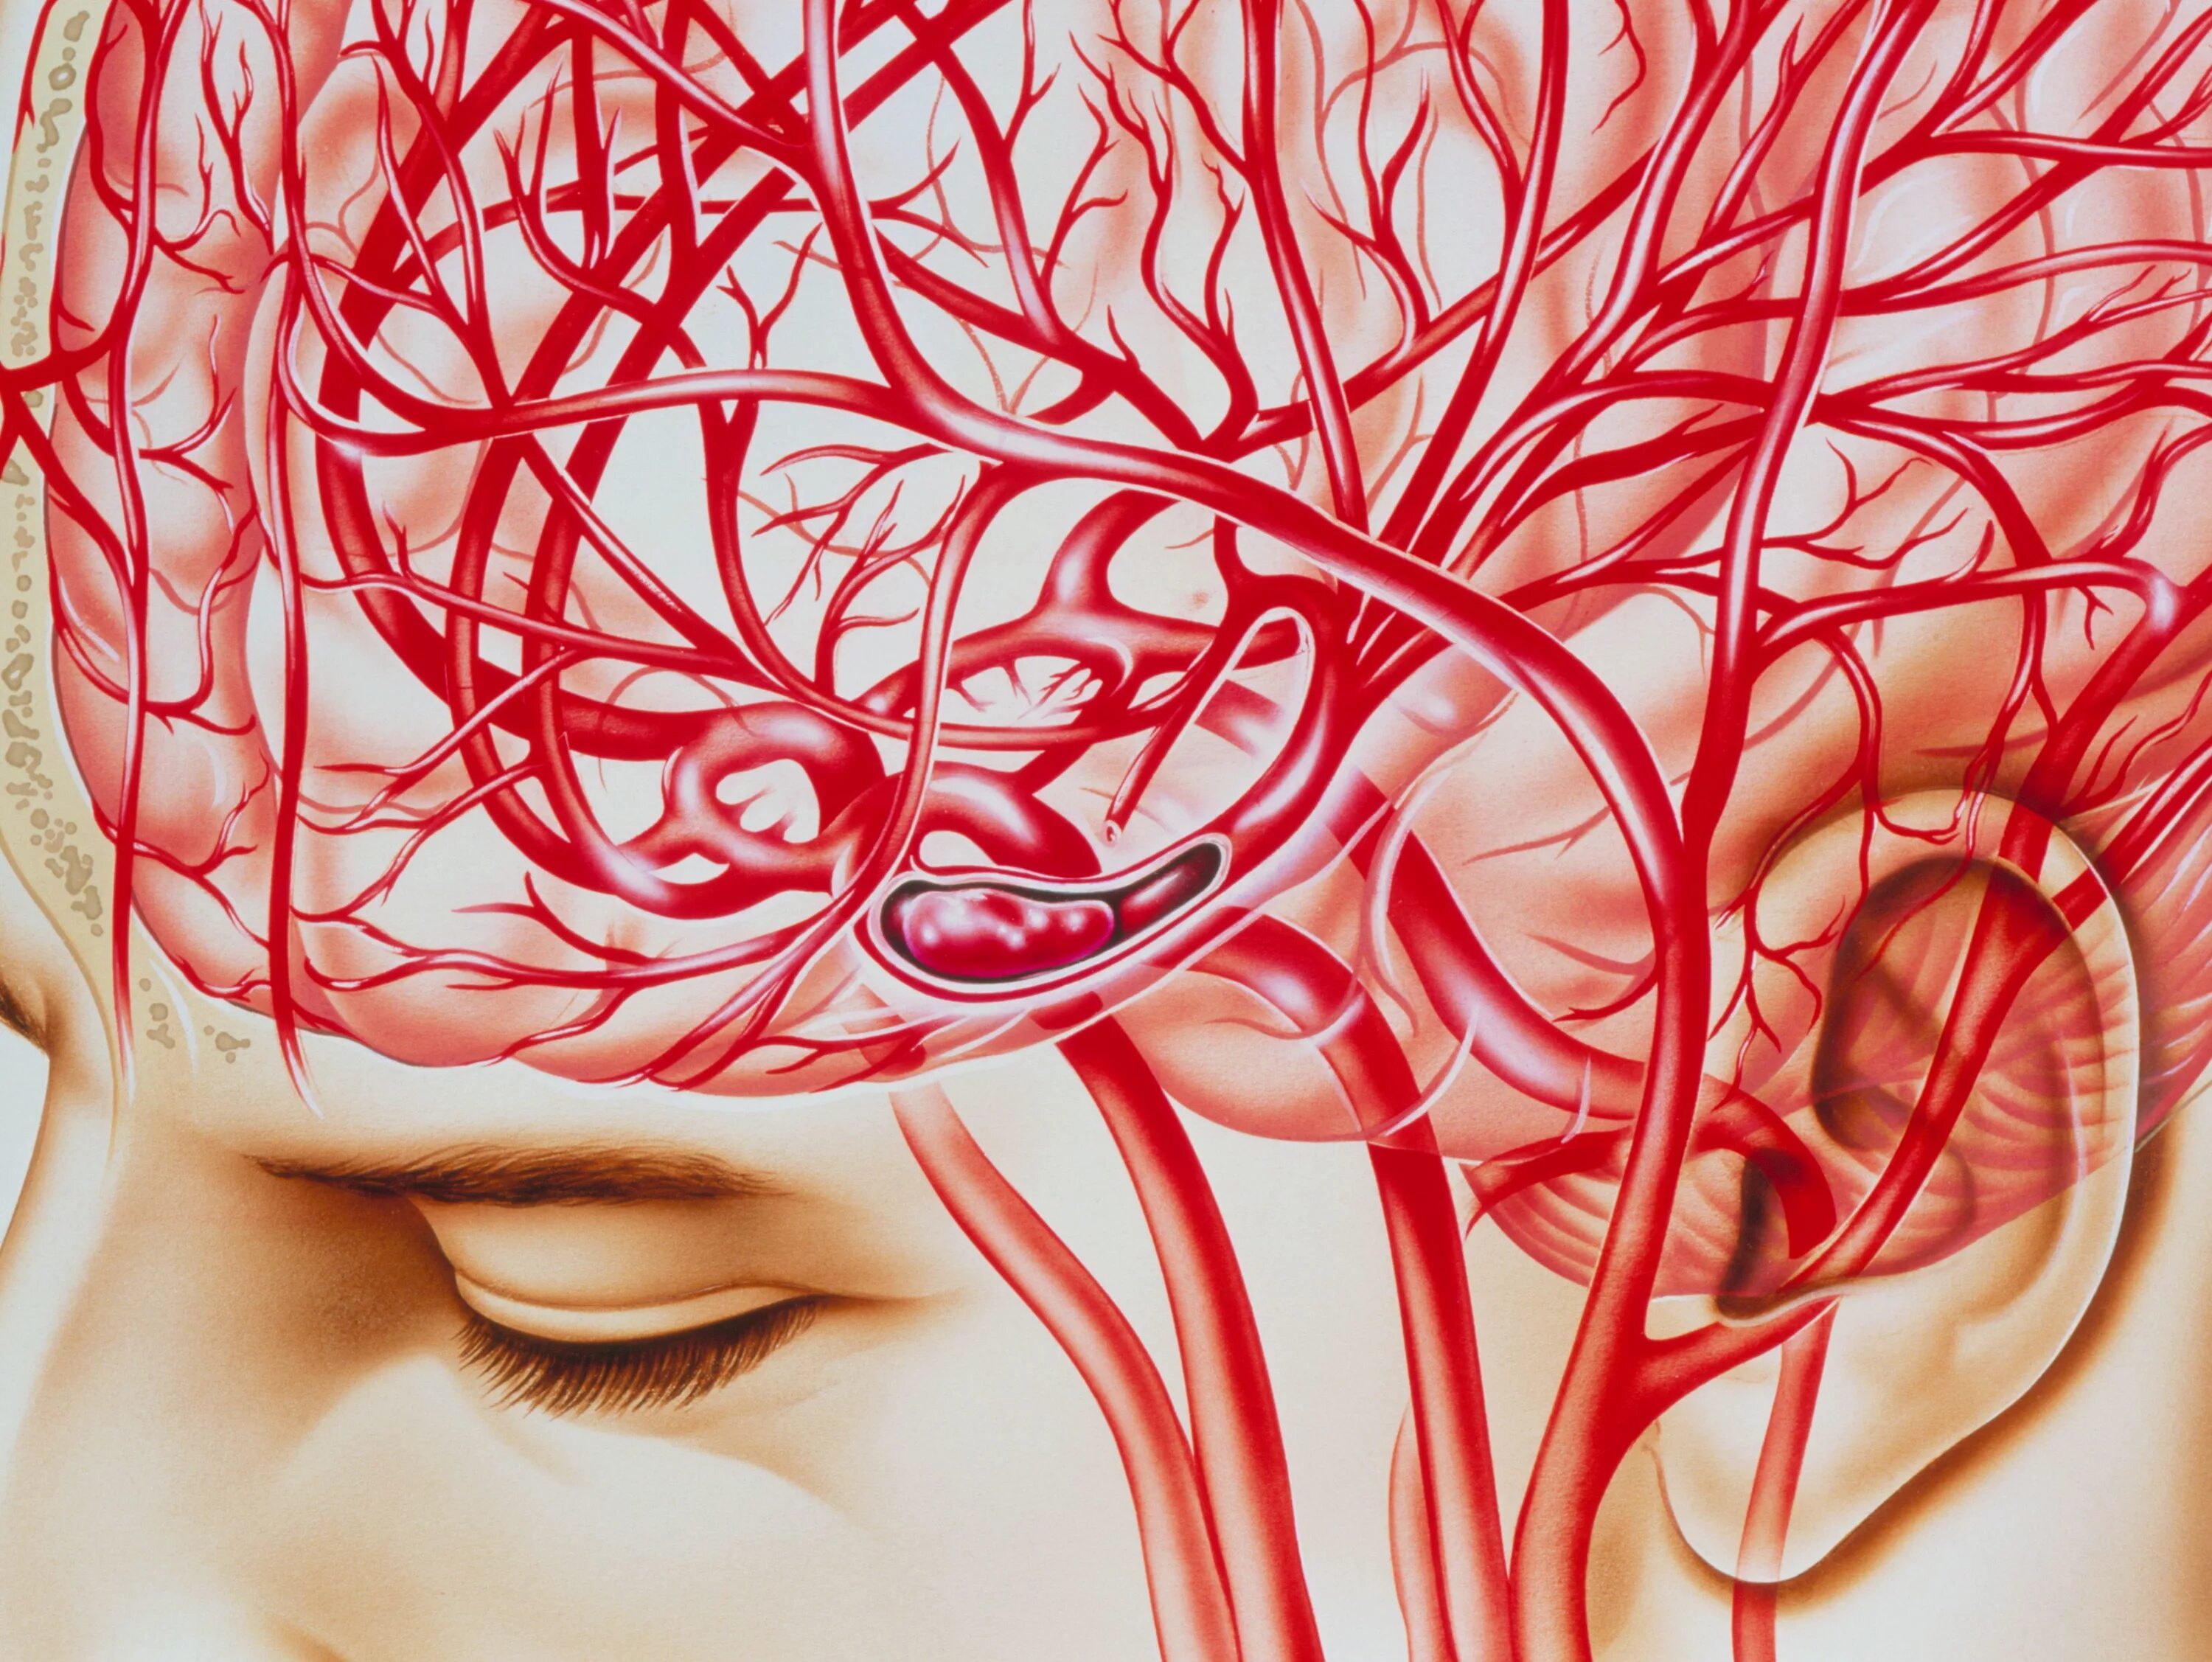 Капилляры головного мозга. Кровеносные сосуды мозга. Артерии и сосуды головного мозга. Улучшится кровообращение